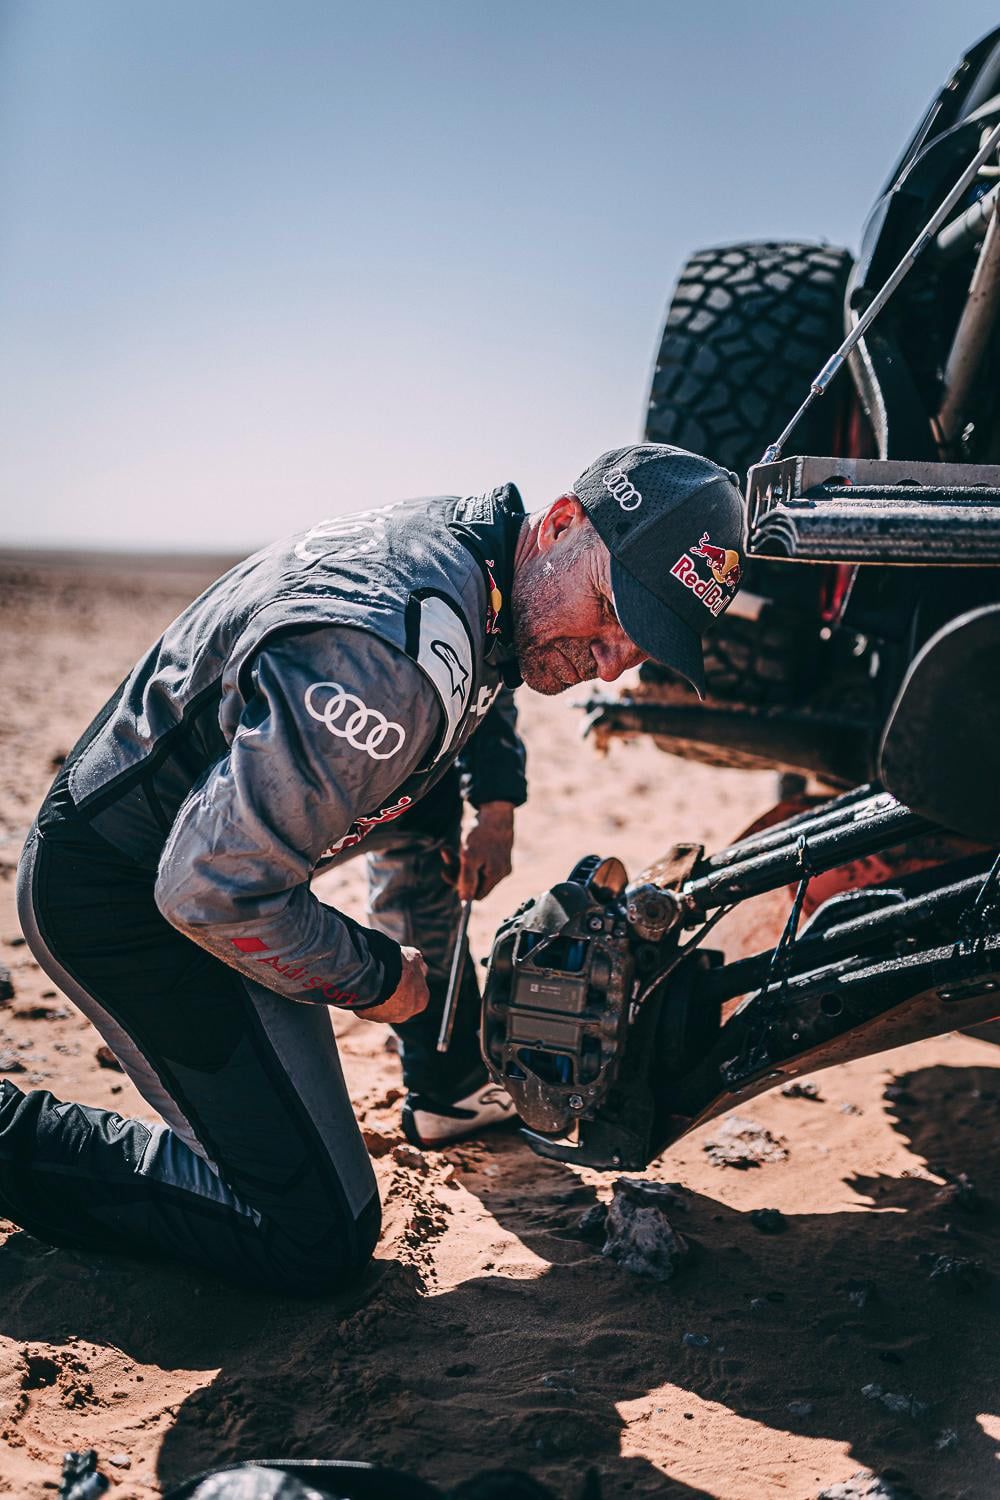 Peterhanselnek többször megg kellett állnia a sivatagban szerelni / Fotó: Dakar Rally Facebook